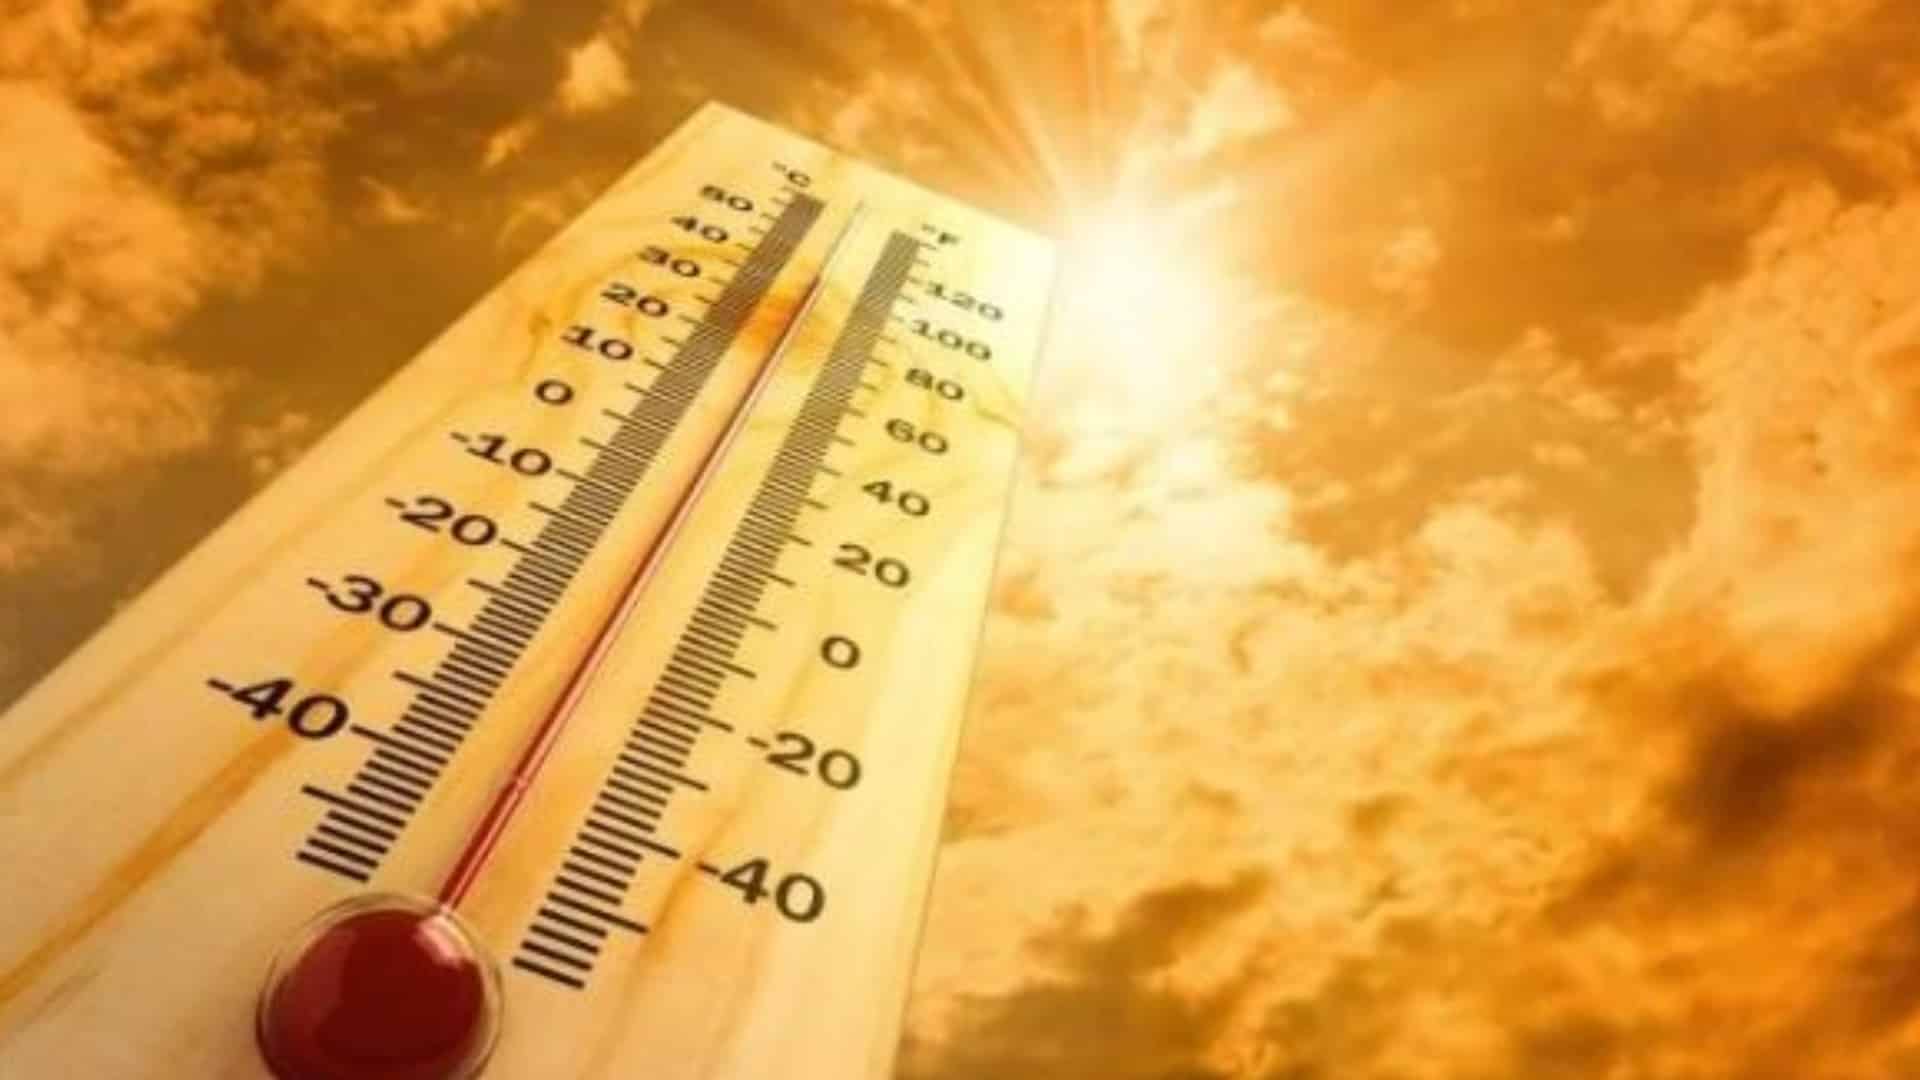 العراق يسجل أعلى درجات الحرارة في العالم